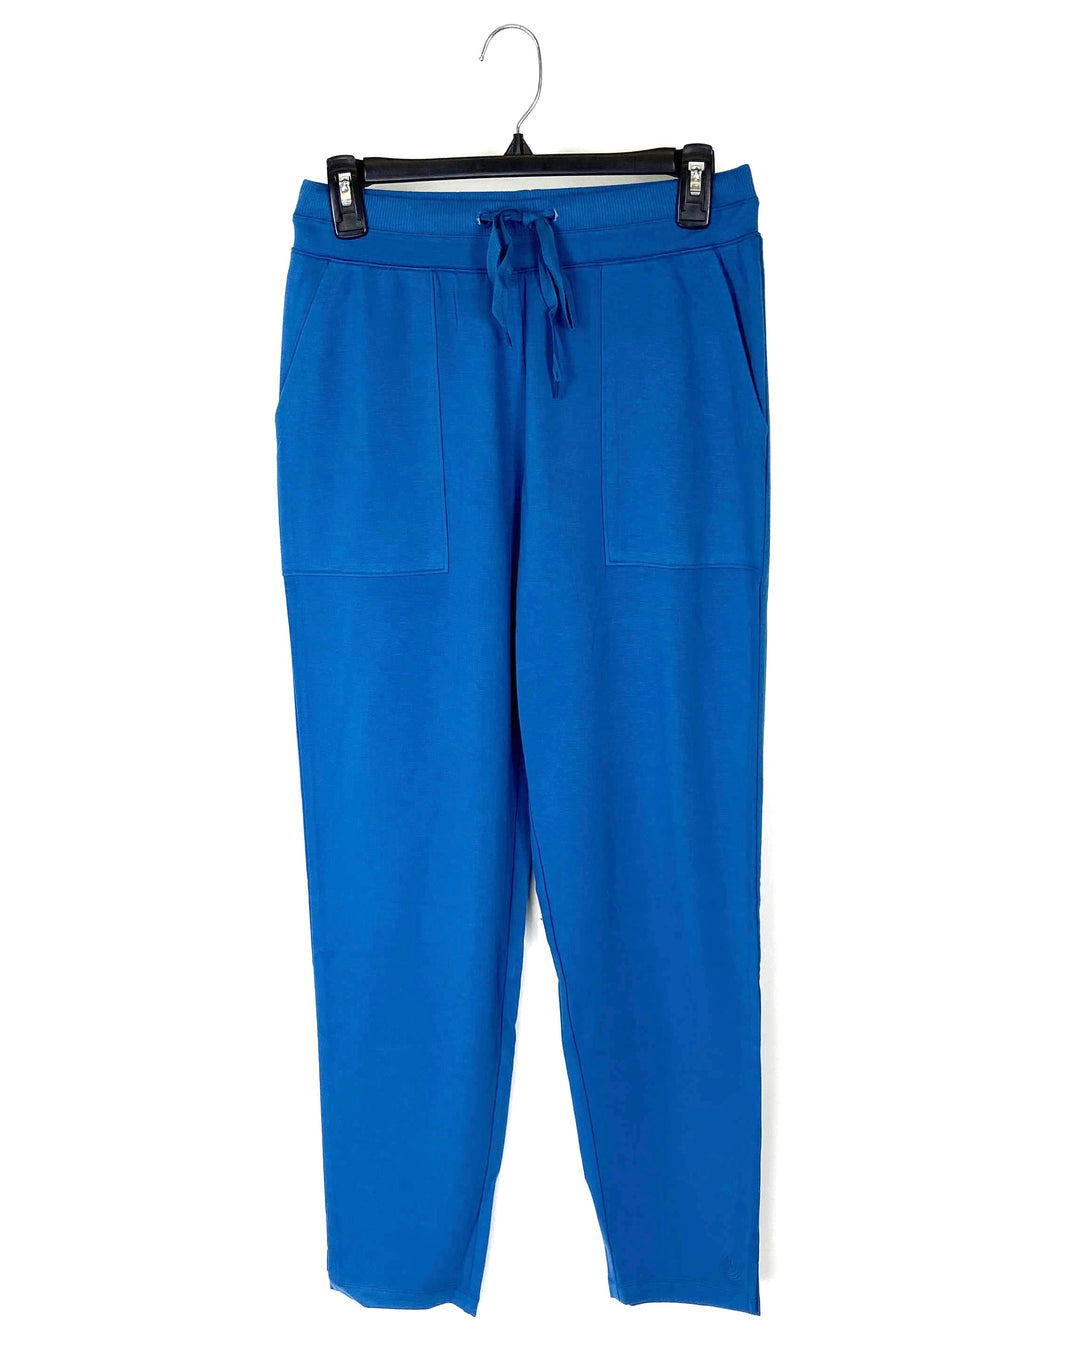 Blue Sweatpants - Size 6/8